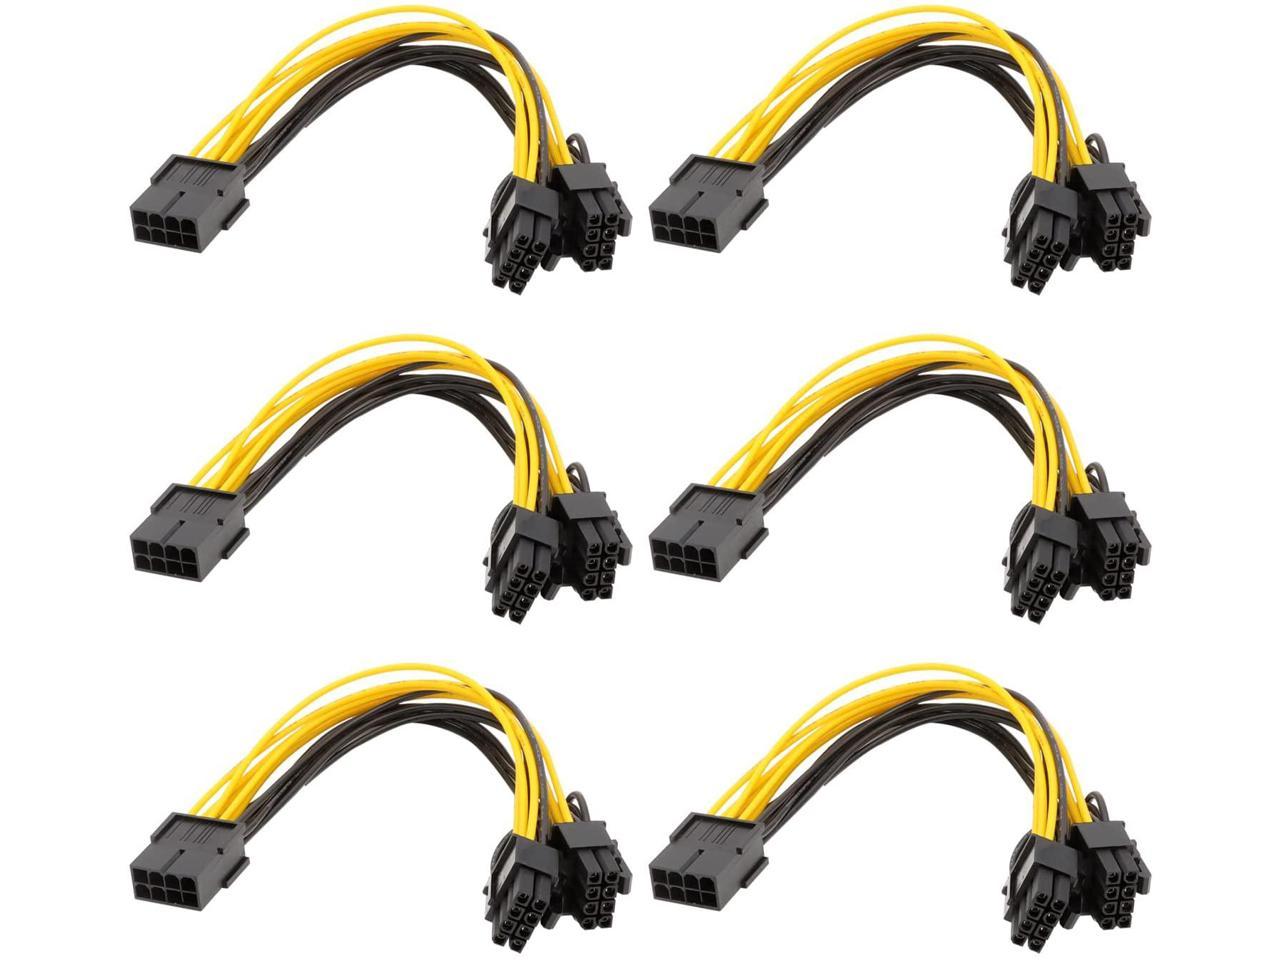 2x DC Power Jack Adapter Plug Female Pigtails 5.5mm X 2.1mm 30cm/12in 12v Port for sale online 